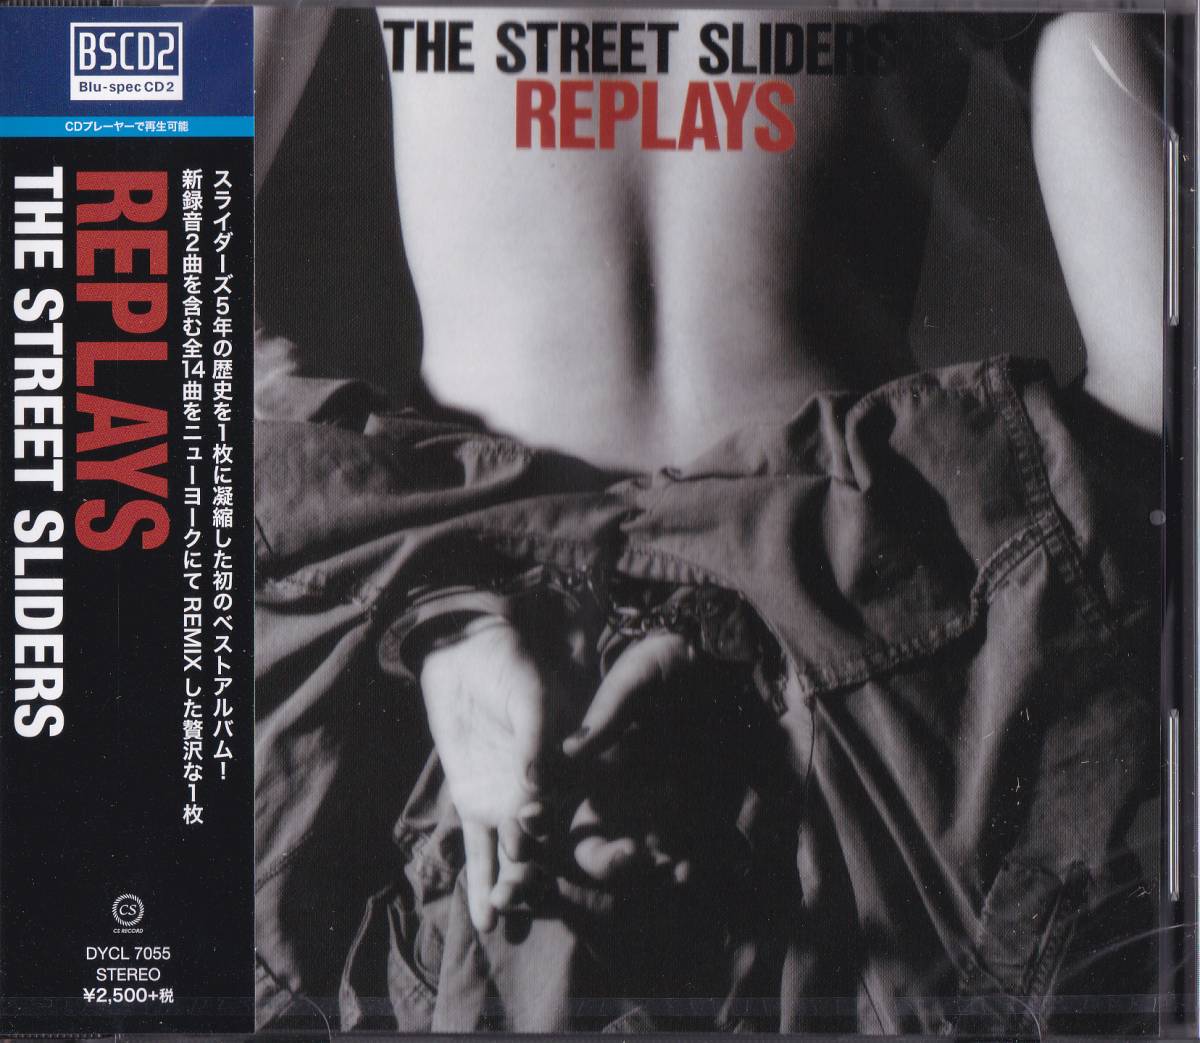 【送料込即決】未開封新品 Blu-spec CD2 ■ THE STREET SLIDERS ストリート・スライダーズ ■ REPLAYS_画像1